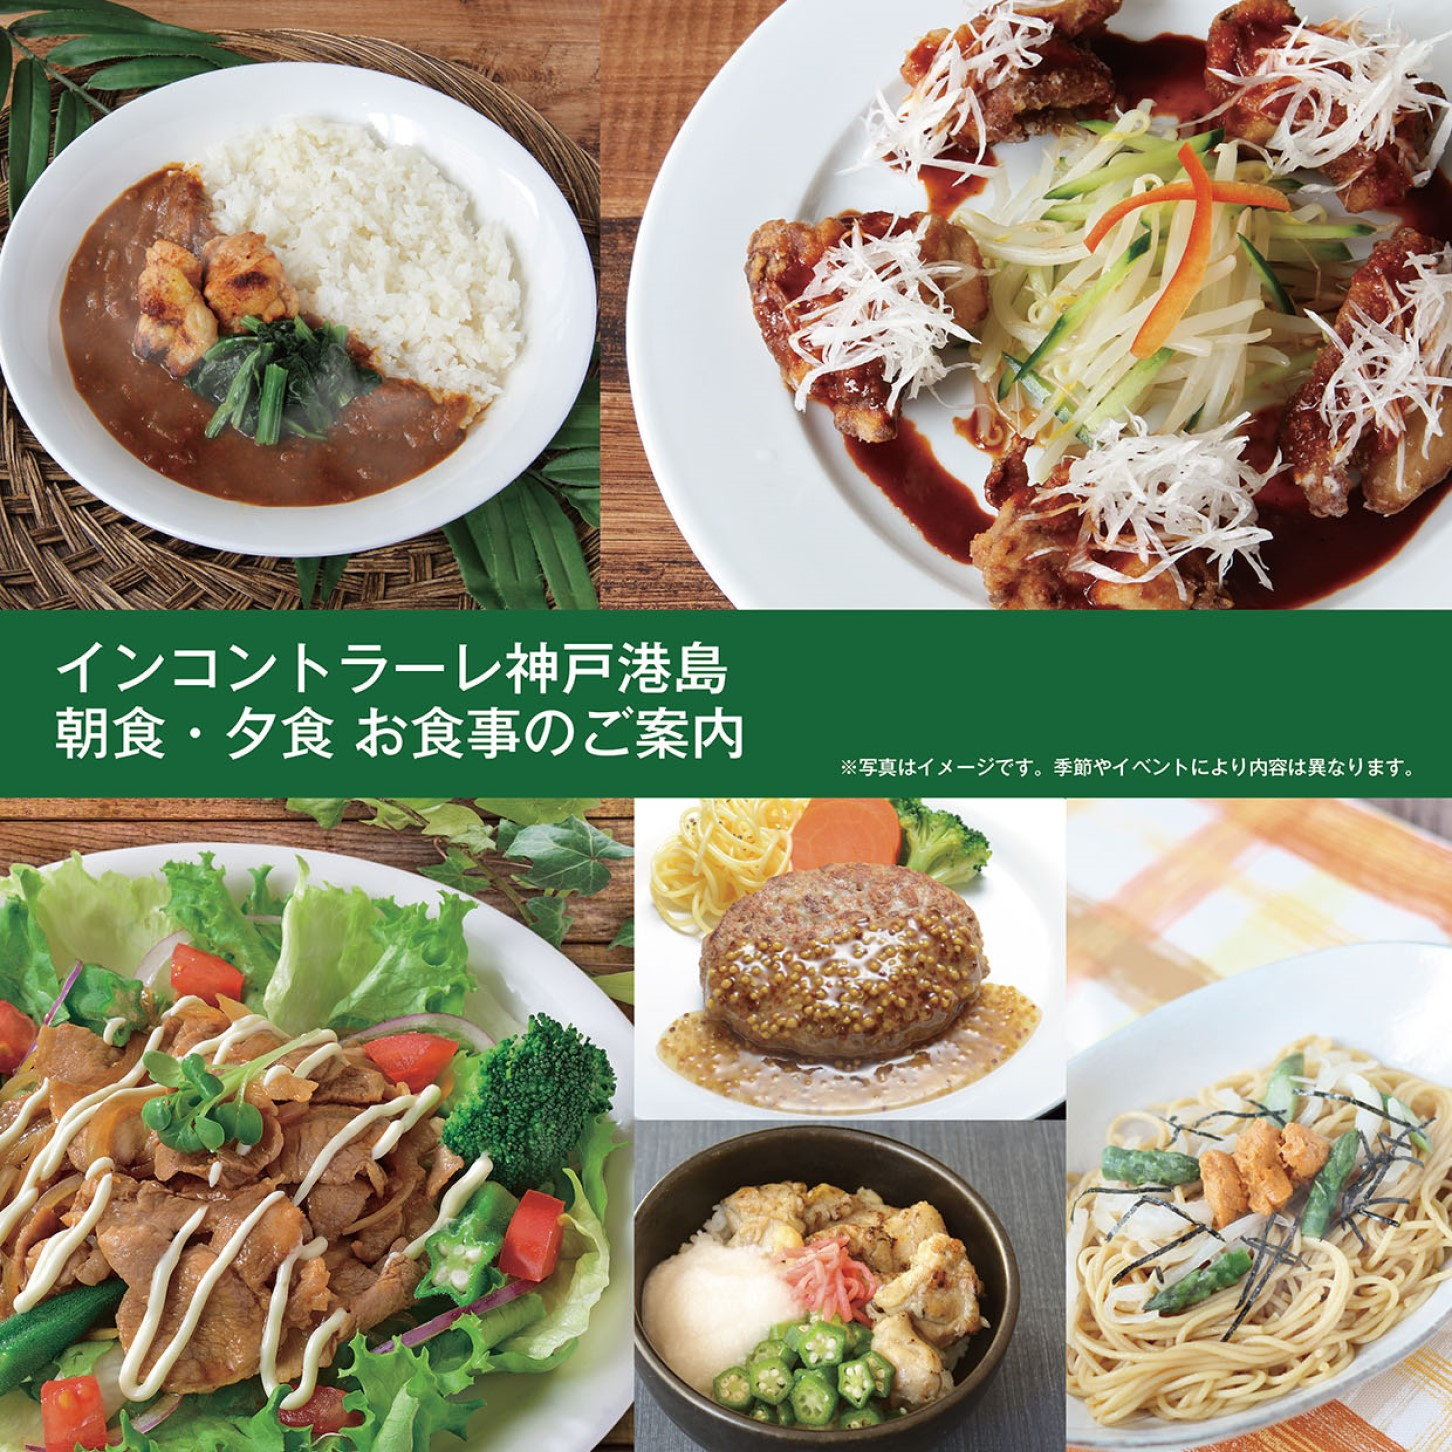 インコントラーレ神戸港島のお食事について、イメージ写真を掲載しております。